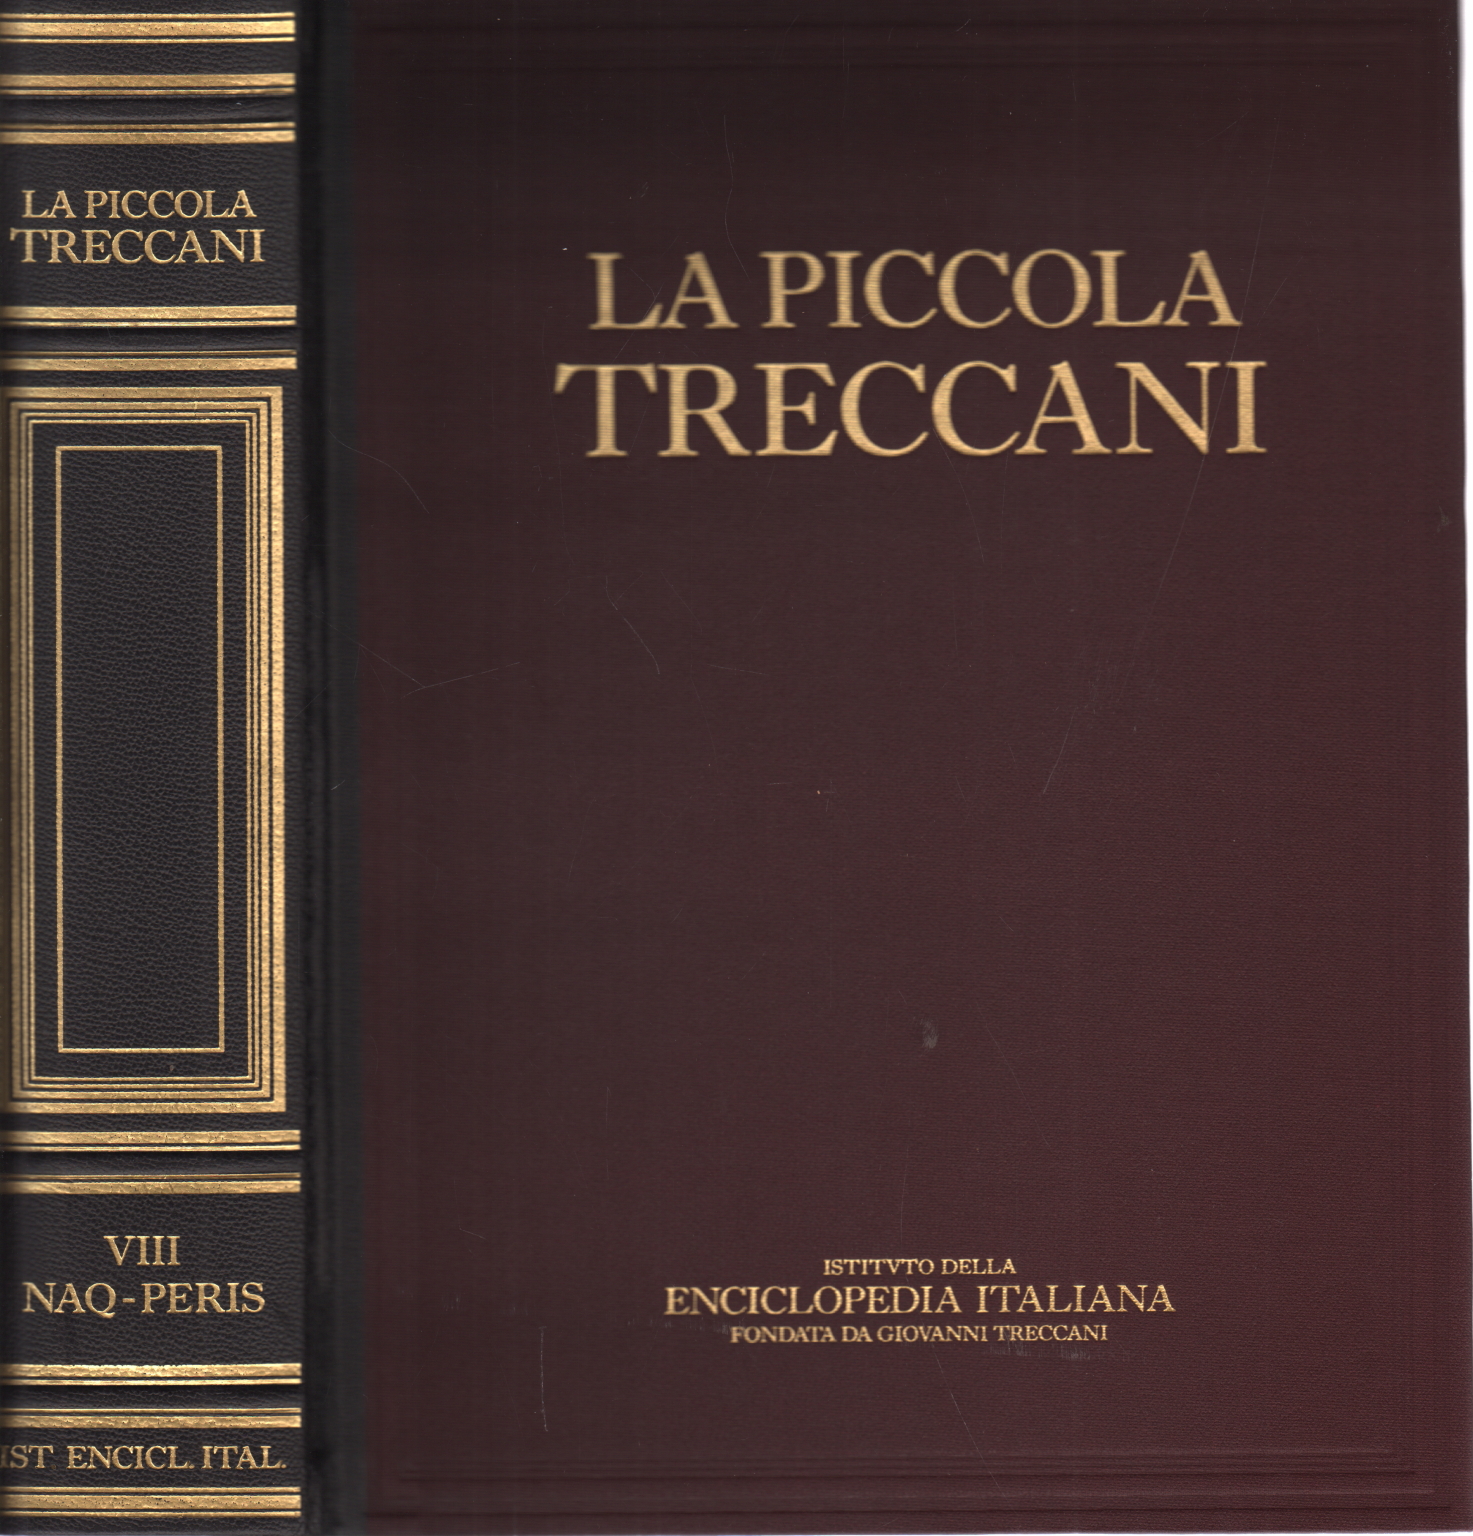 Der kleine Treccani VIII Naq-Peris